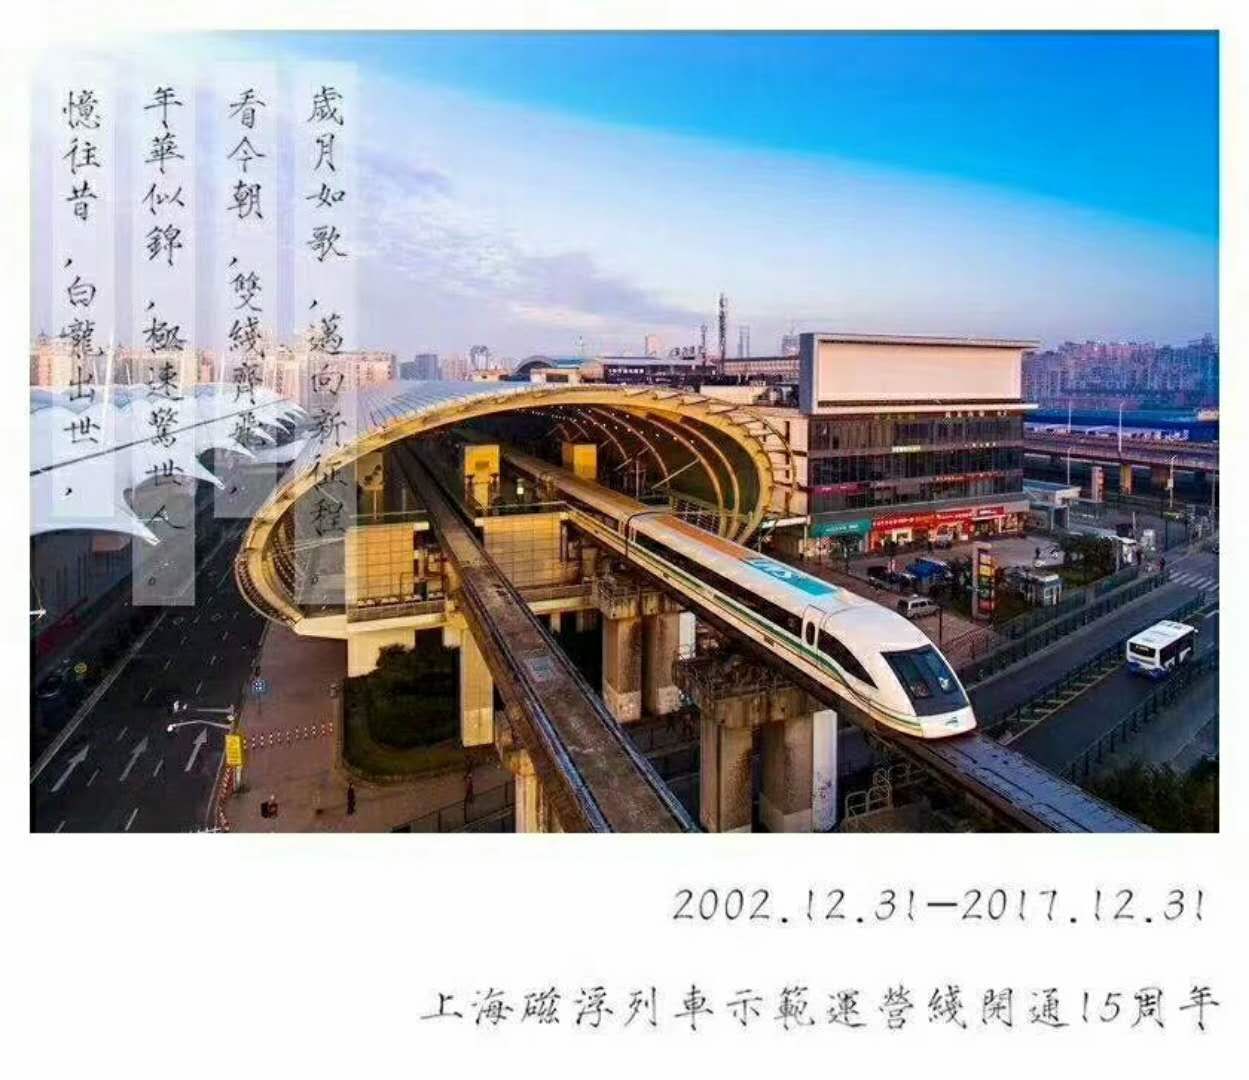 磁浮的春天来了上海高速磁浮示范线开通15周年2017大事纪